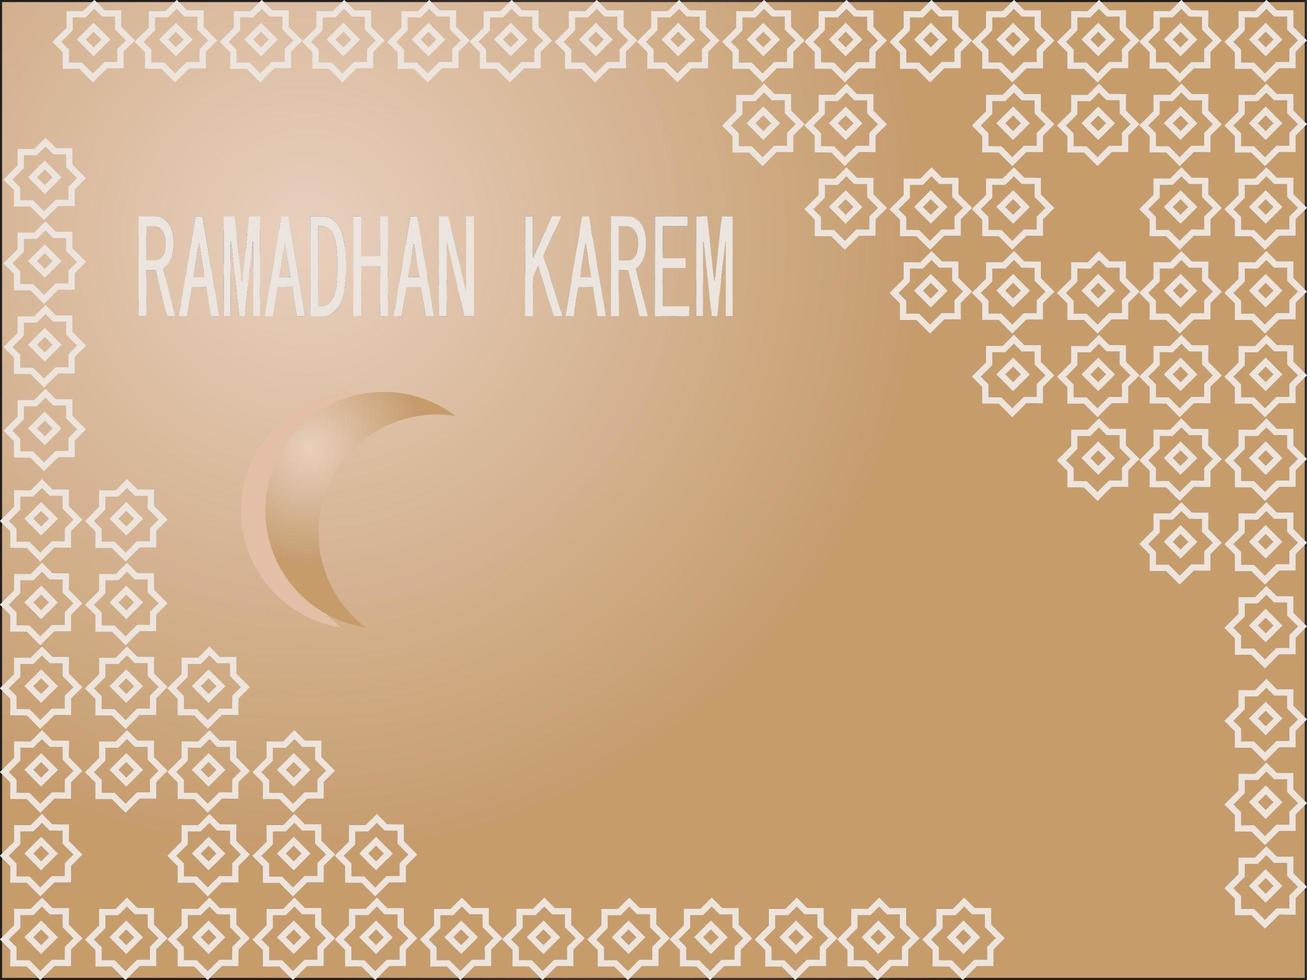 grußkarte für ramadan mit grauer arabischer traditioneller verzierung auf braunem hintergrund foto